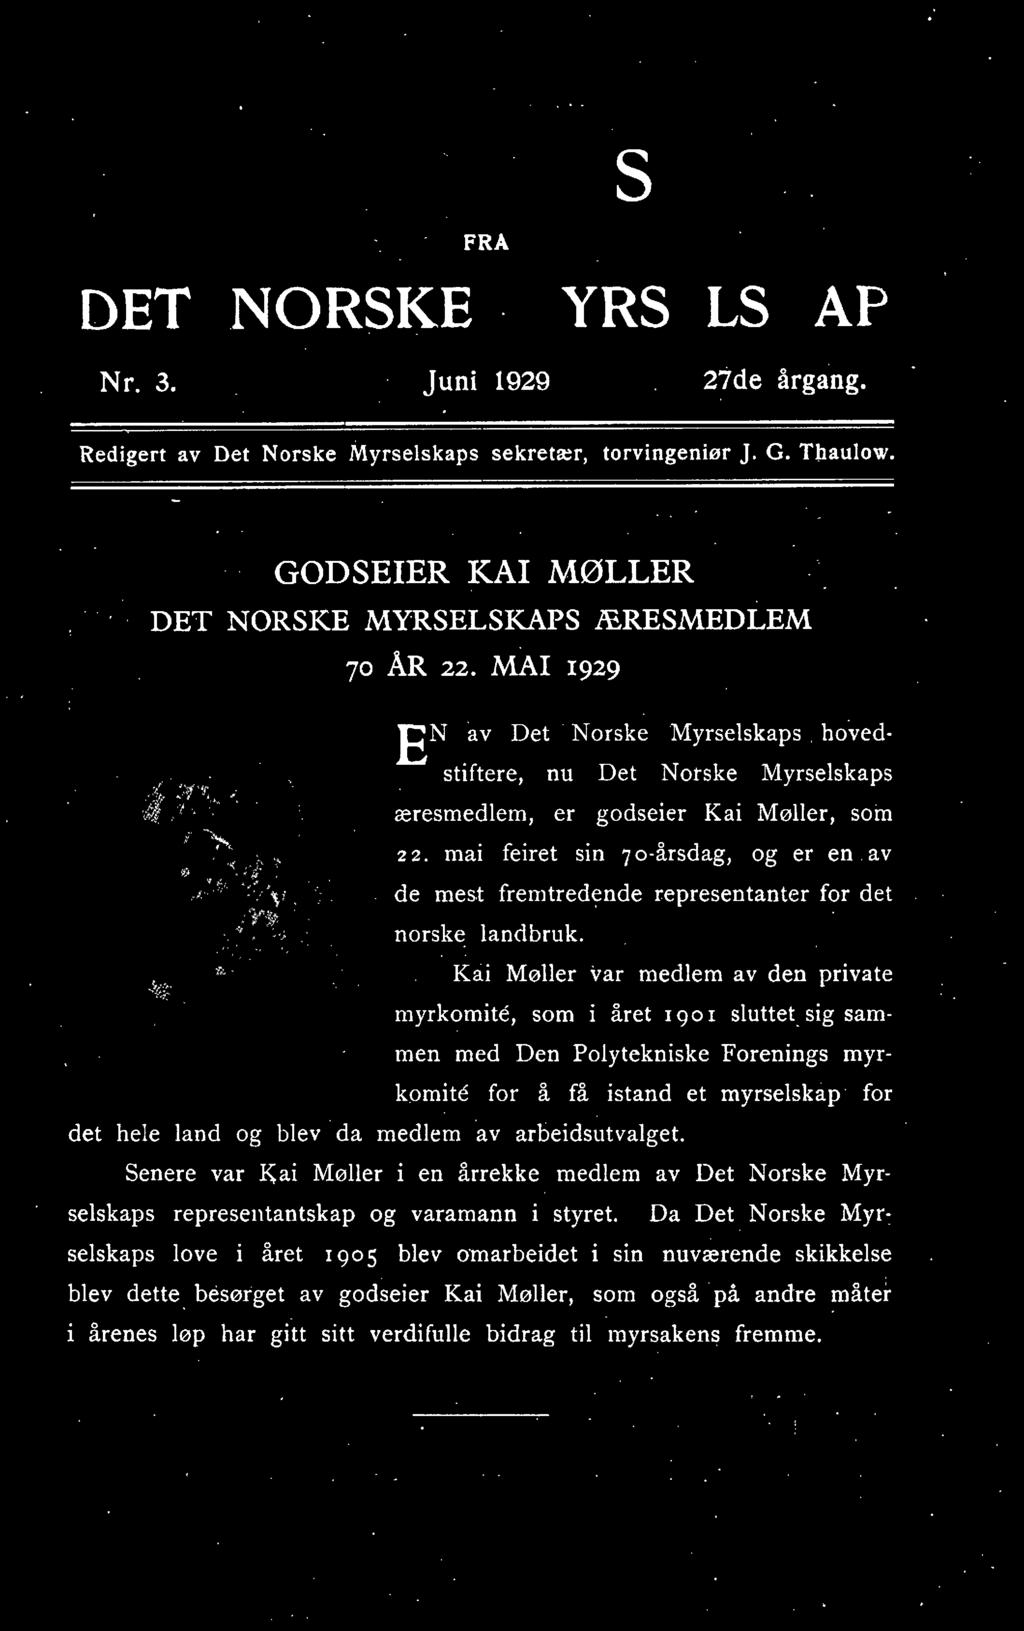 Kai Møller var medlem av den private myrkomite, som i året 1901 sluttetsig sam men med Den Polytekniske Forenings myr~ komite for å få istand et myrselskap for det